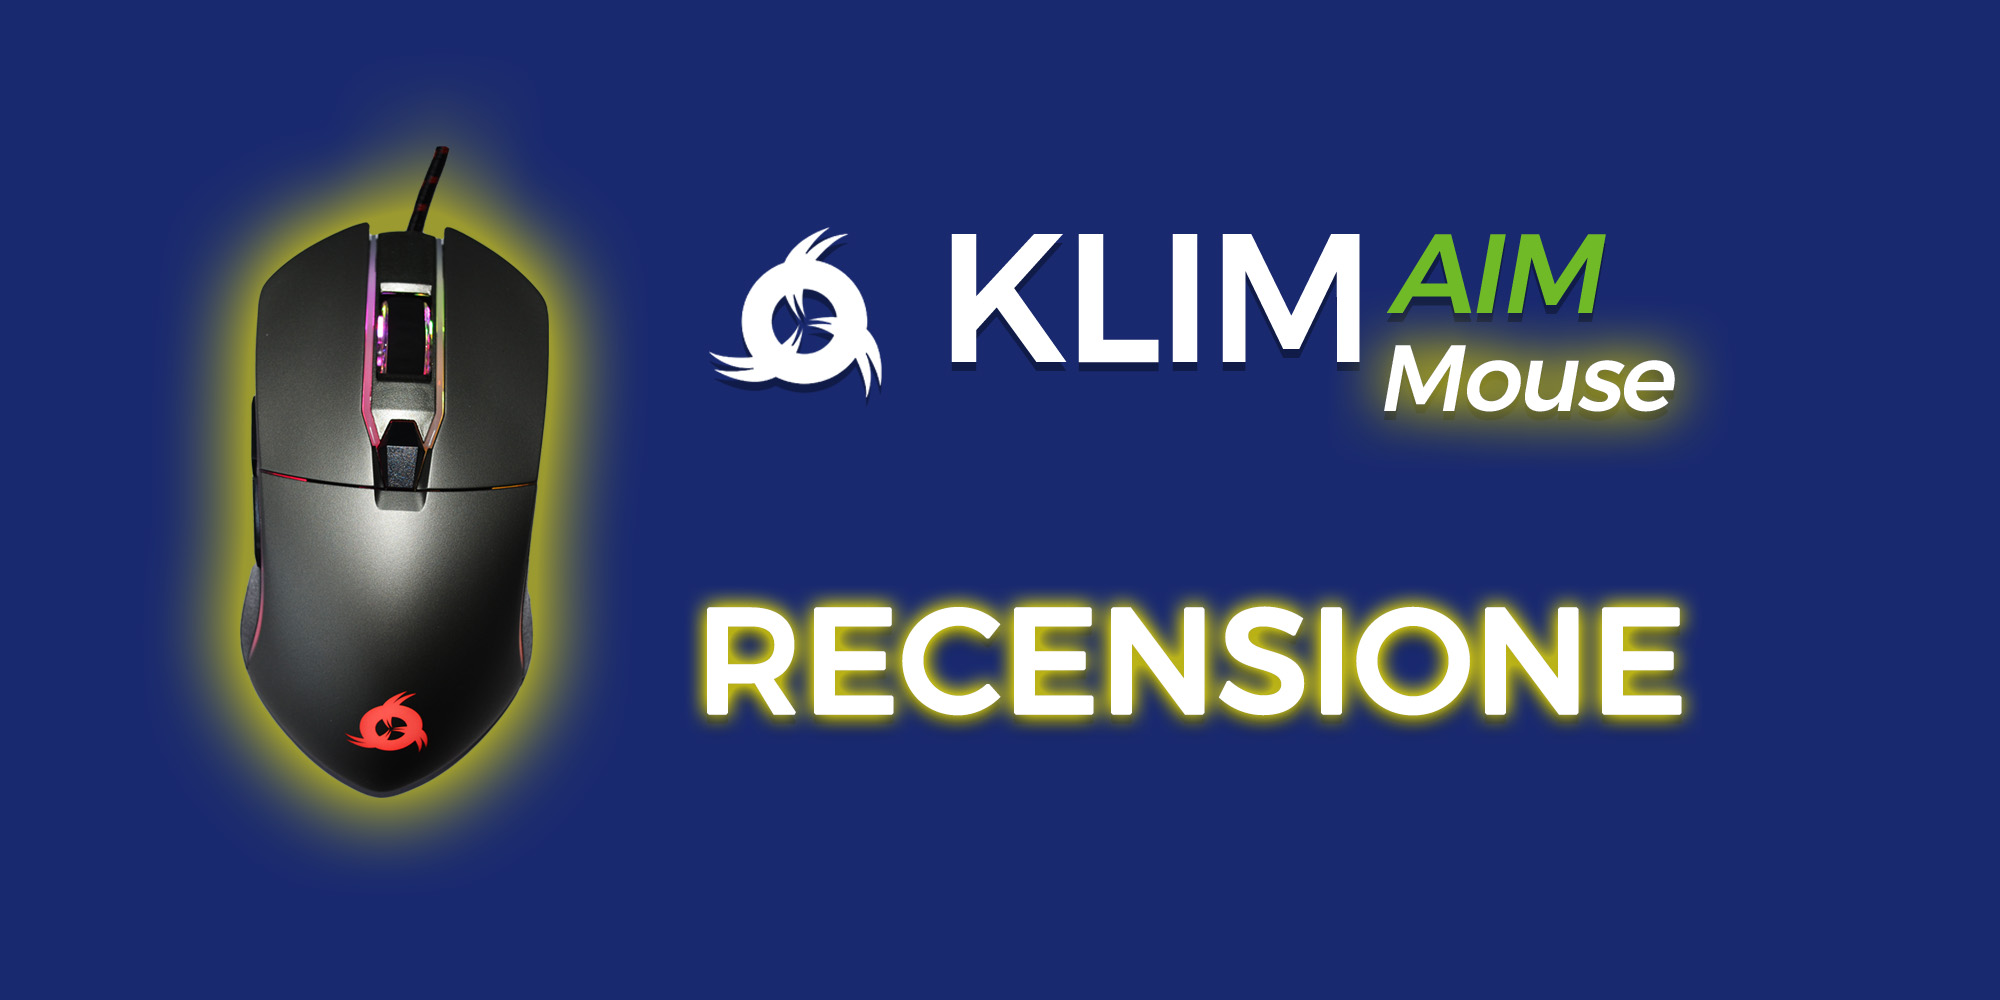 Recensione: Mouse Klim AIM